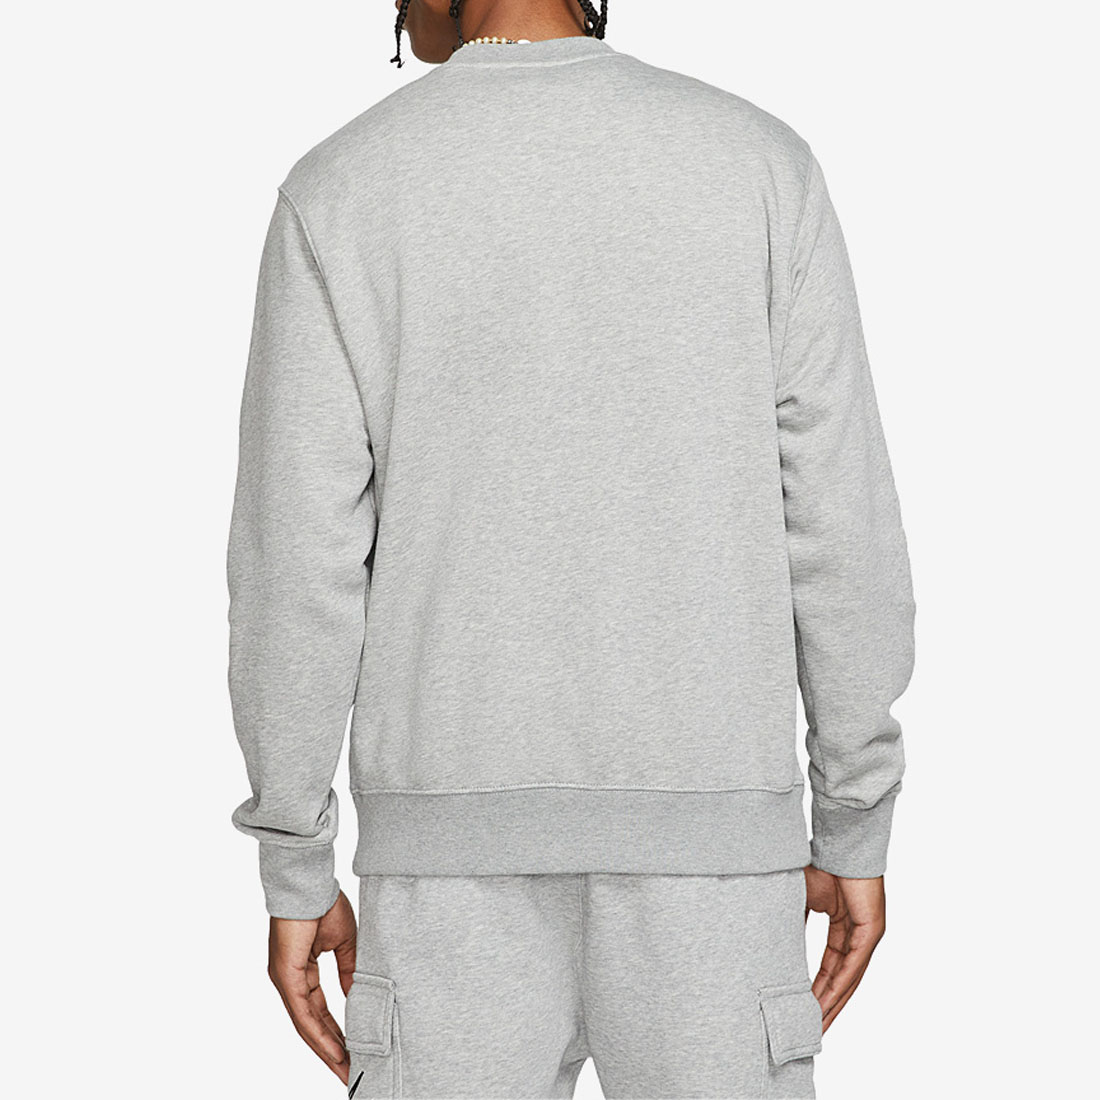 Nike Sportswear Multi Swoosh Mens Grey Graphic Fleece Sweatshirt ...